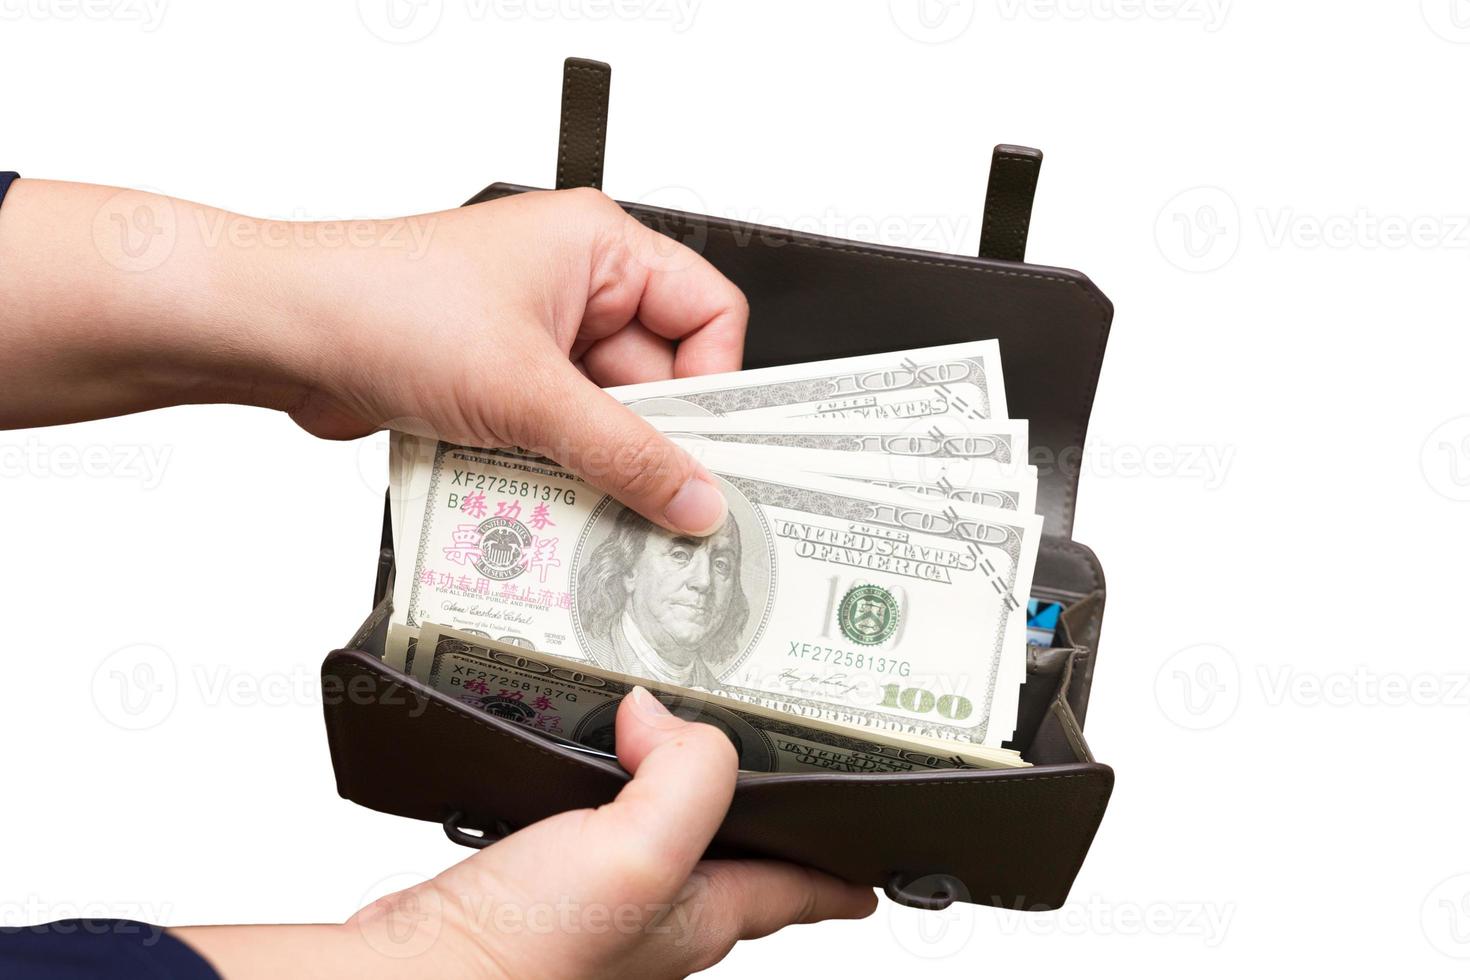 de hand van de vrouw houdt een paar honderd-dollarbiljetten en een portemonnee vast op een geïsoleerde of uitgesneden achtergrond met een uitknippad. Chinese die op de bankbiljetten verschijnen, zijn replica's van bankbiljetten om te filmen. foto